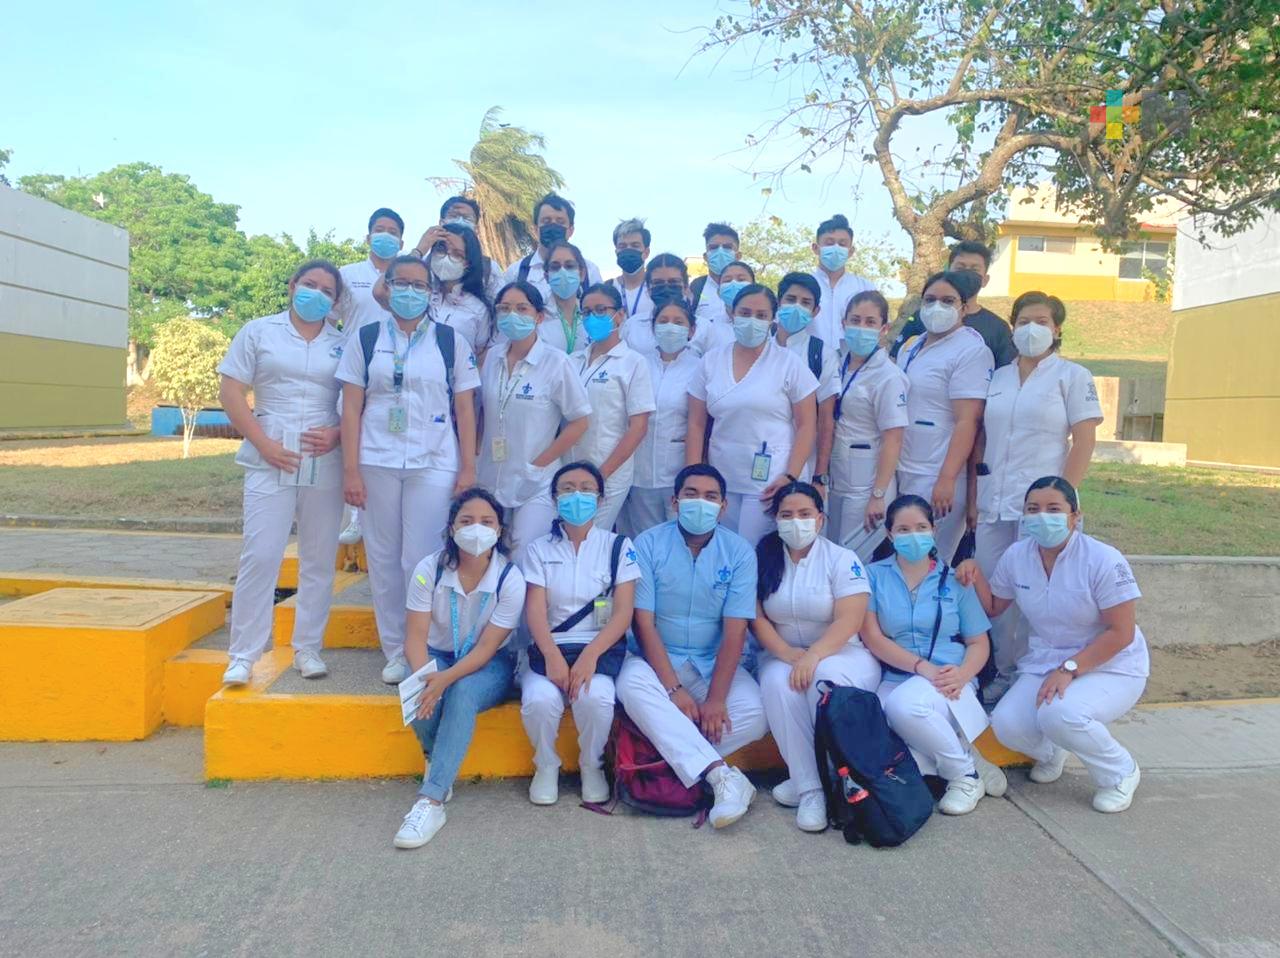 Para estudiante de enfermería, un gran reto participar en combate en emergencia sanitaria en Minatitlán y Coatzacoalcos